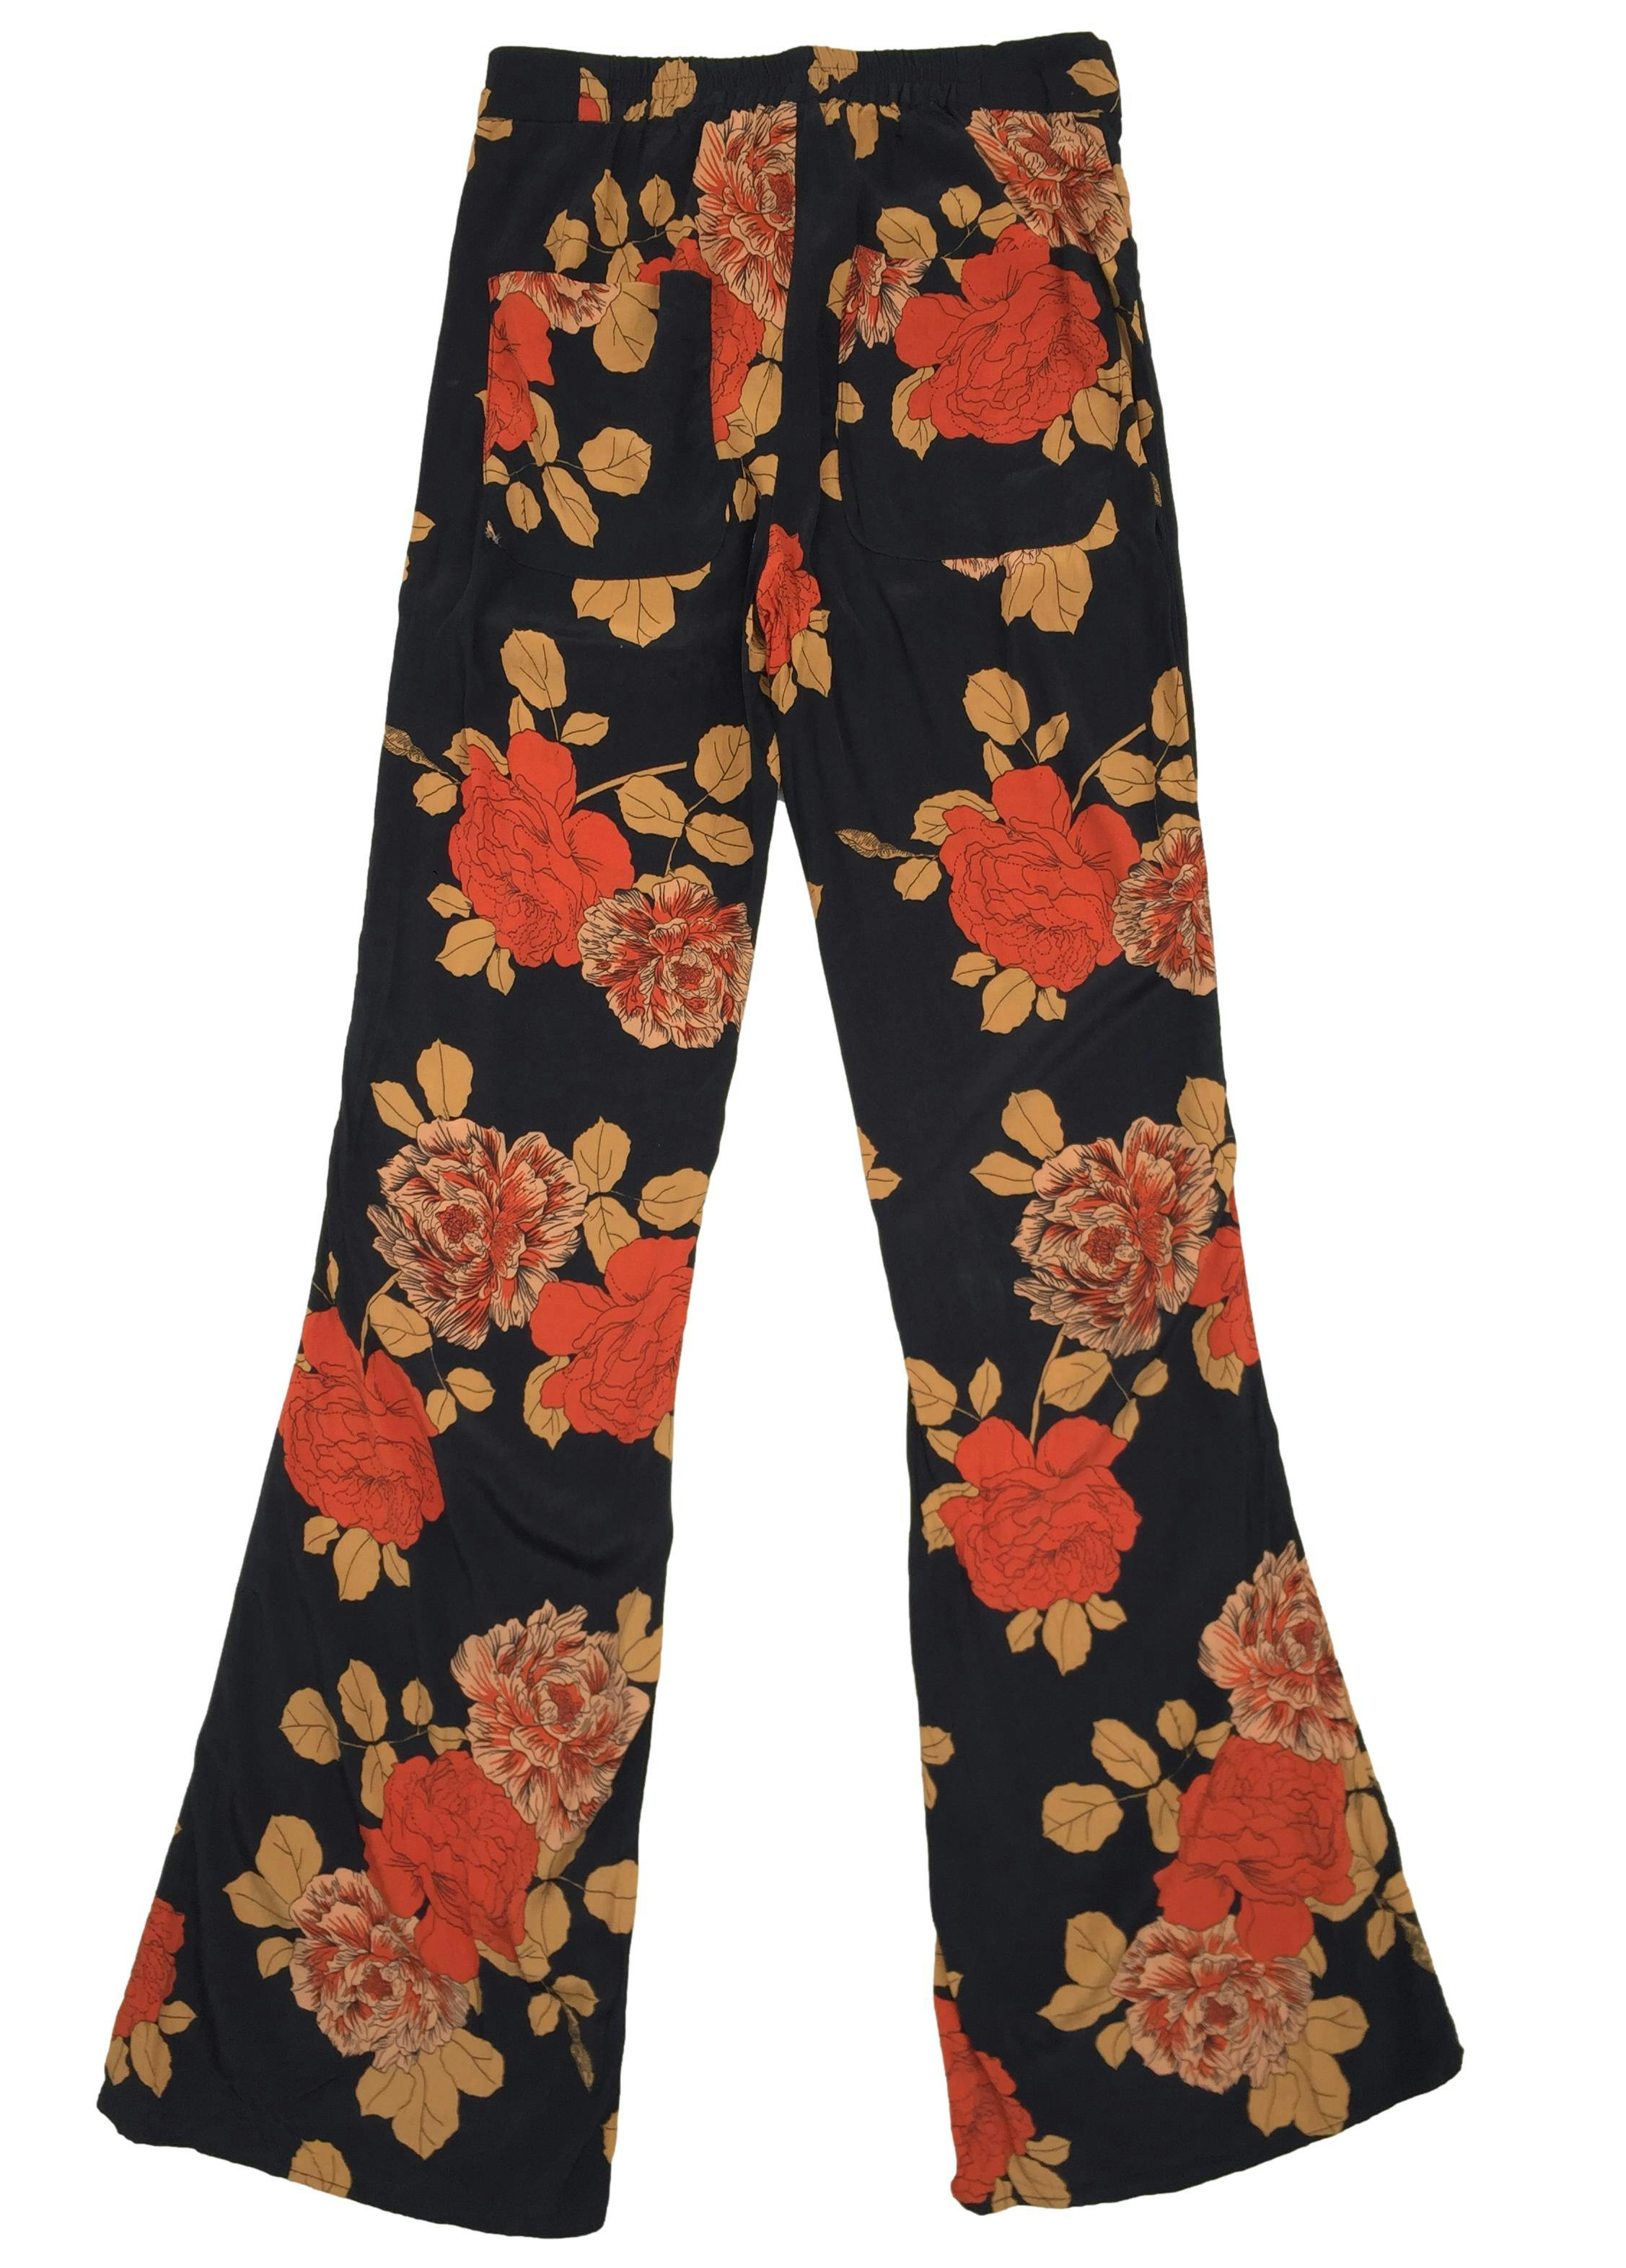 Pantalón Mango negro con estampado de flores naranjas con broche, cierre y elástico en la cintura. Cintura 66 cm sin estirar, Tiro 28 cm, Largo 110 cm. 